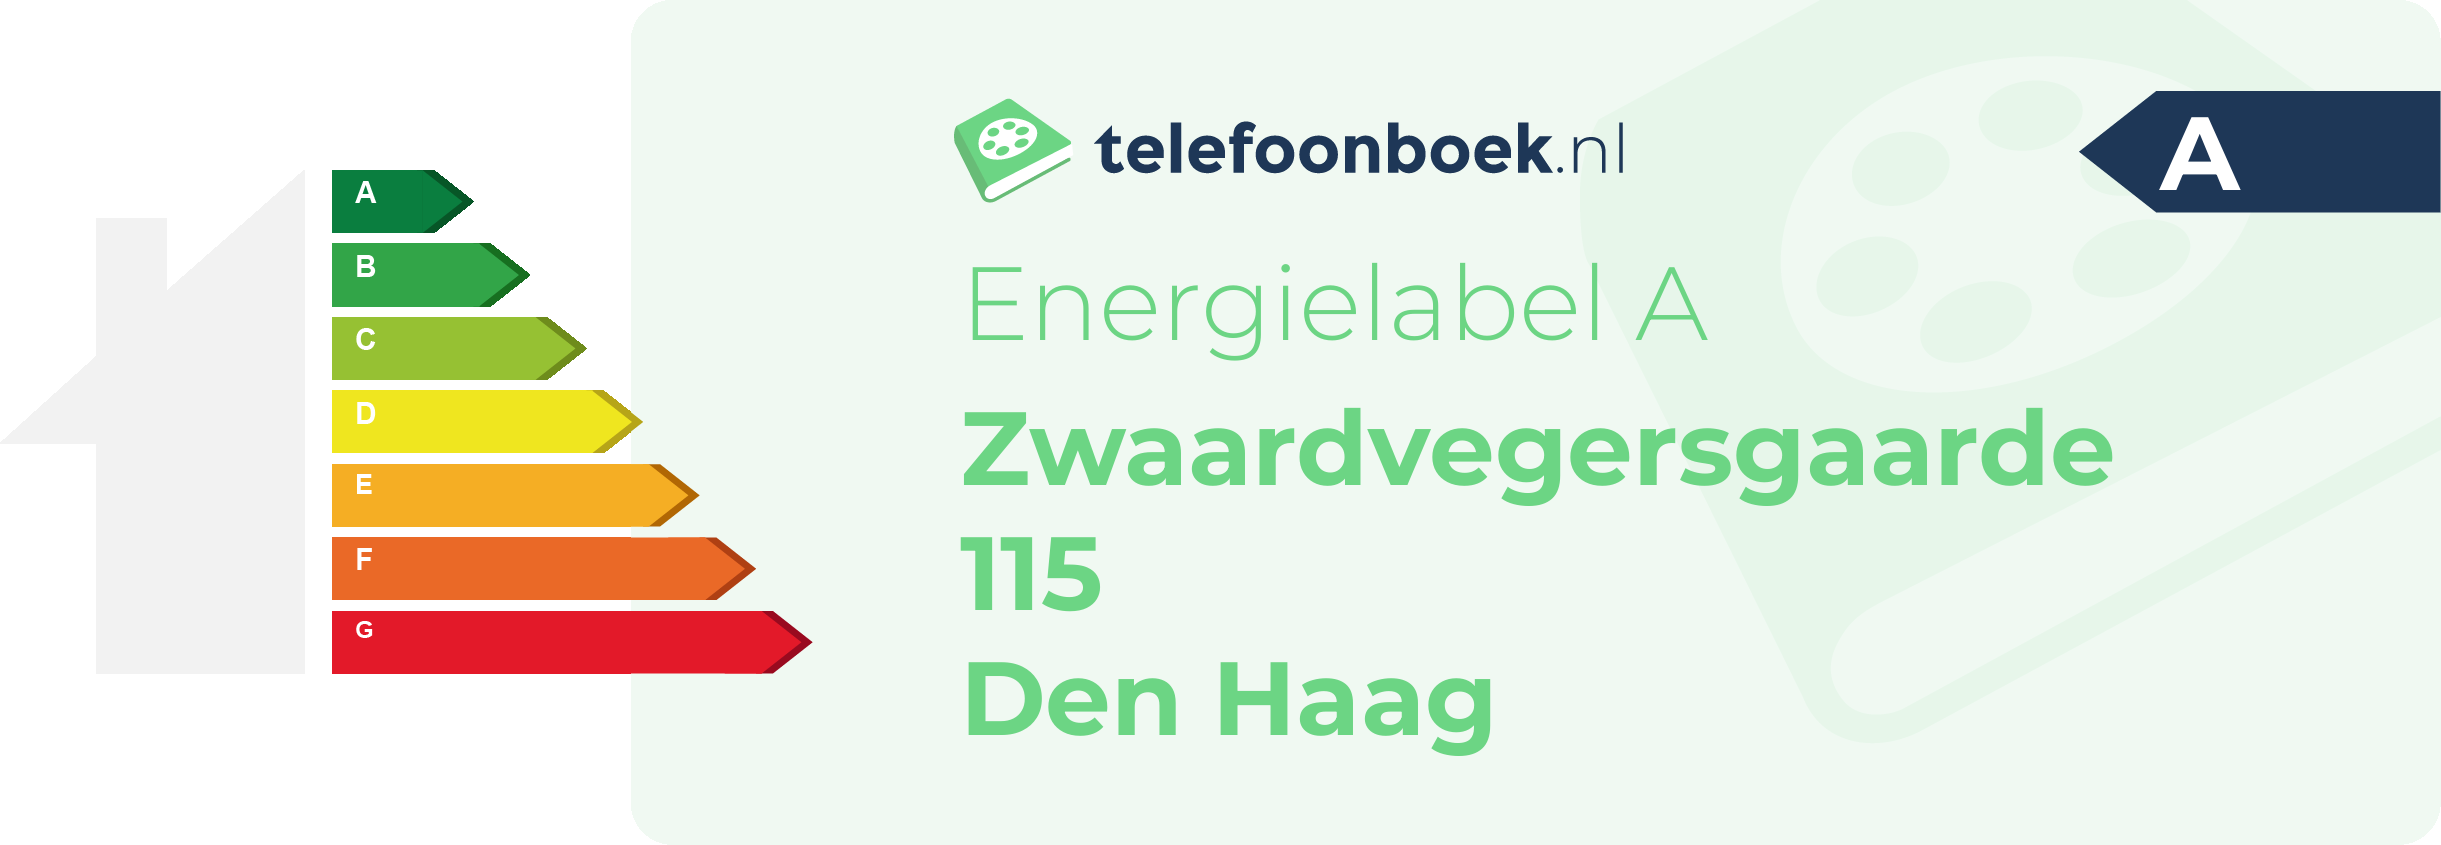 Energielabel Zwaardvegersgaarde 115 Den Haag